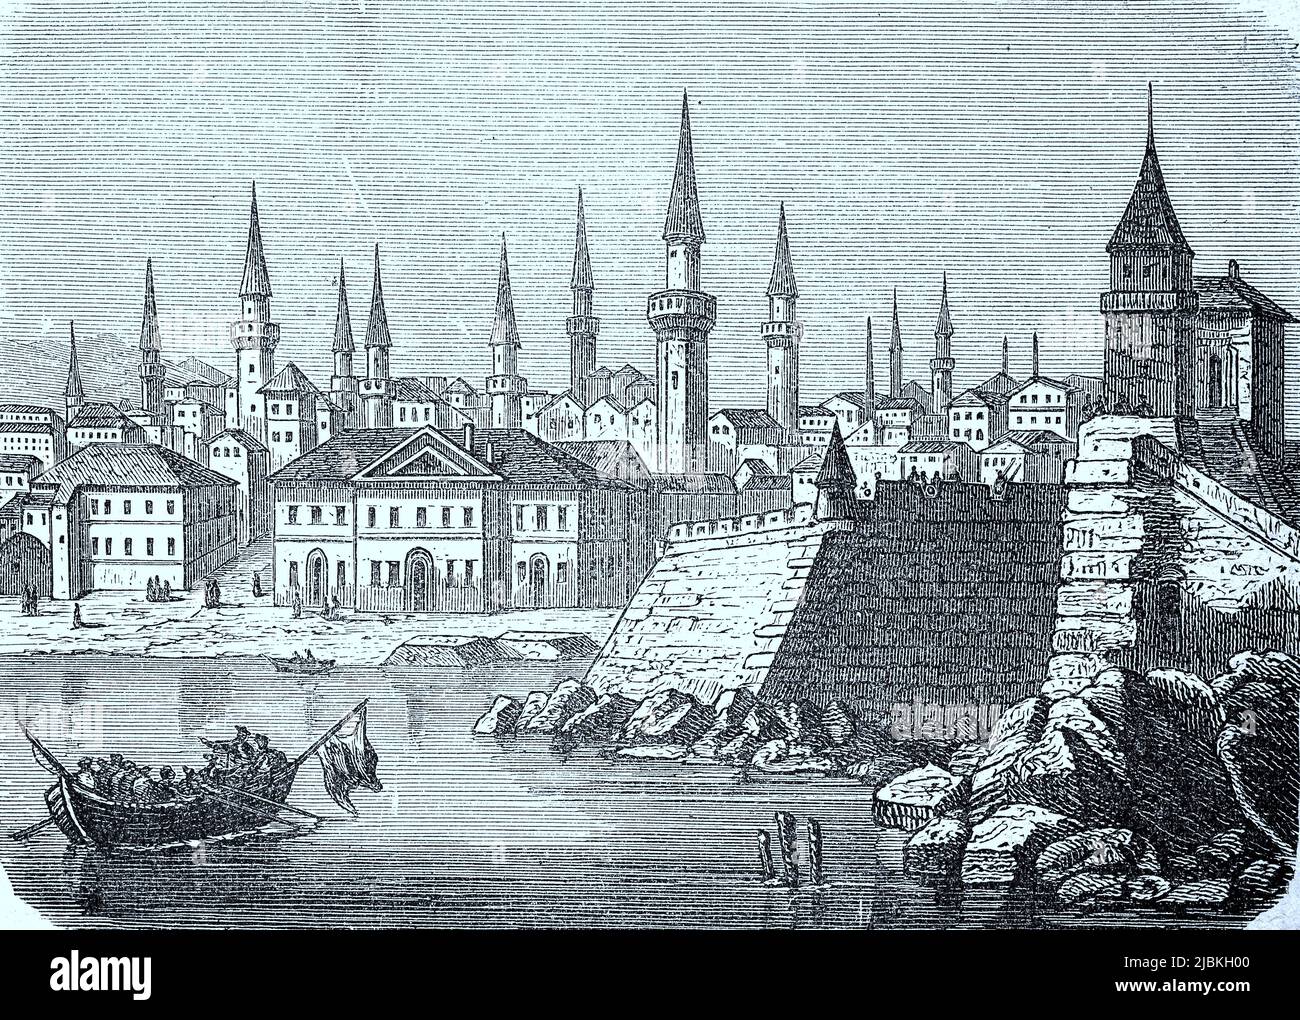 Widdin an der Donau im Jahre 1880, Festung und Stadtpanorama, Bulgarien, digital restaurierte Reproduktion einer Originalvorlage aus dem 19. Jahrhundert, genaues Originaldatum nicht bekannt Banque D'Images